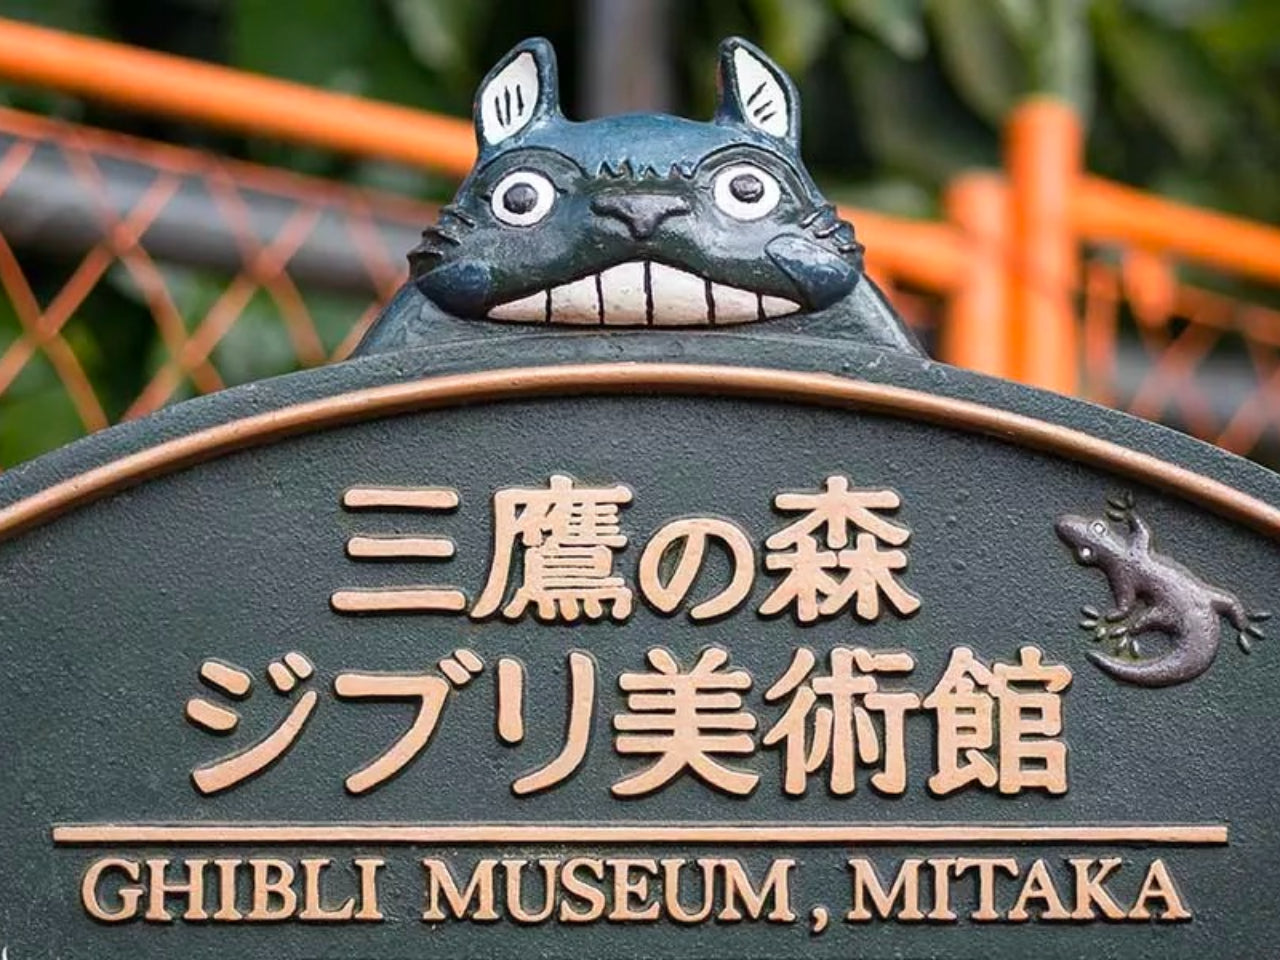 Mitaka no Mori Jiburi Bijutsukan: The Ghibli Museum